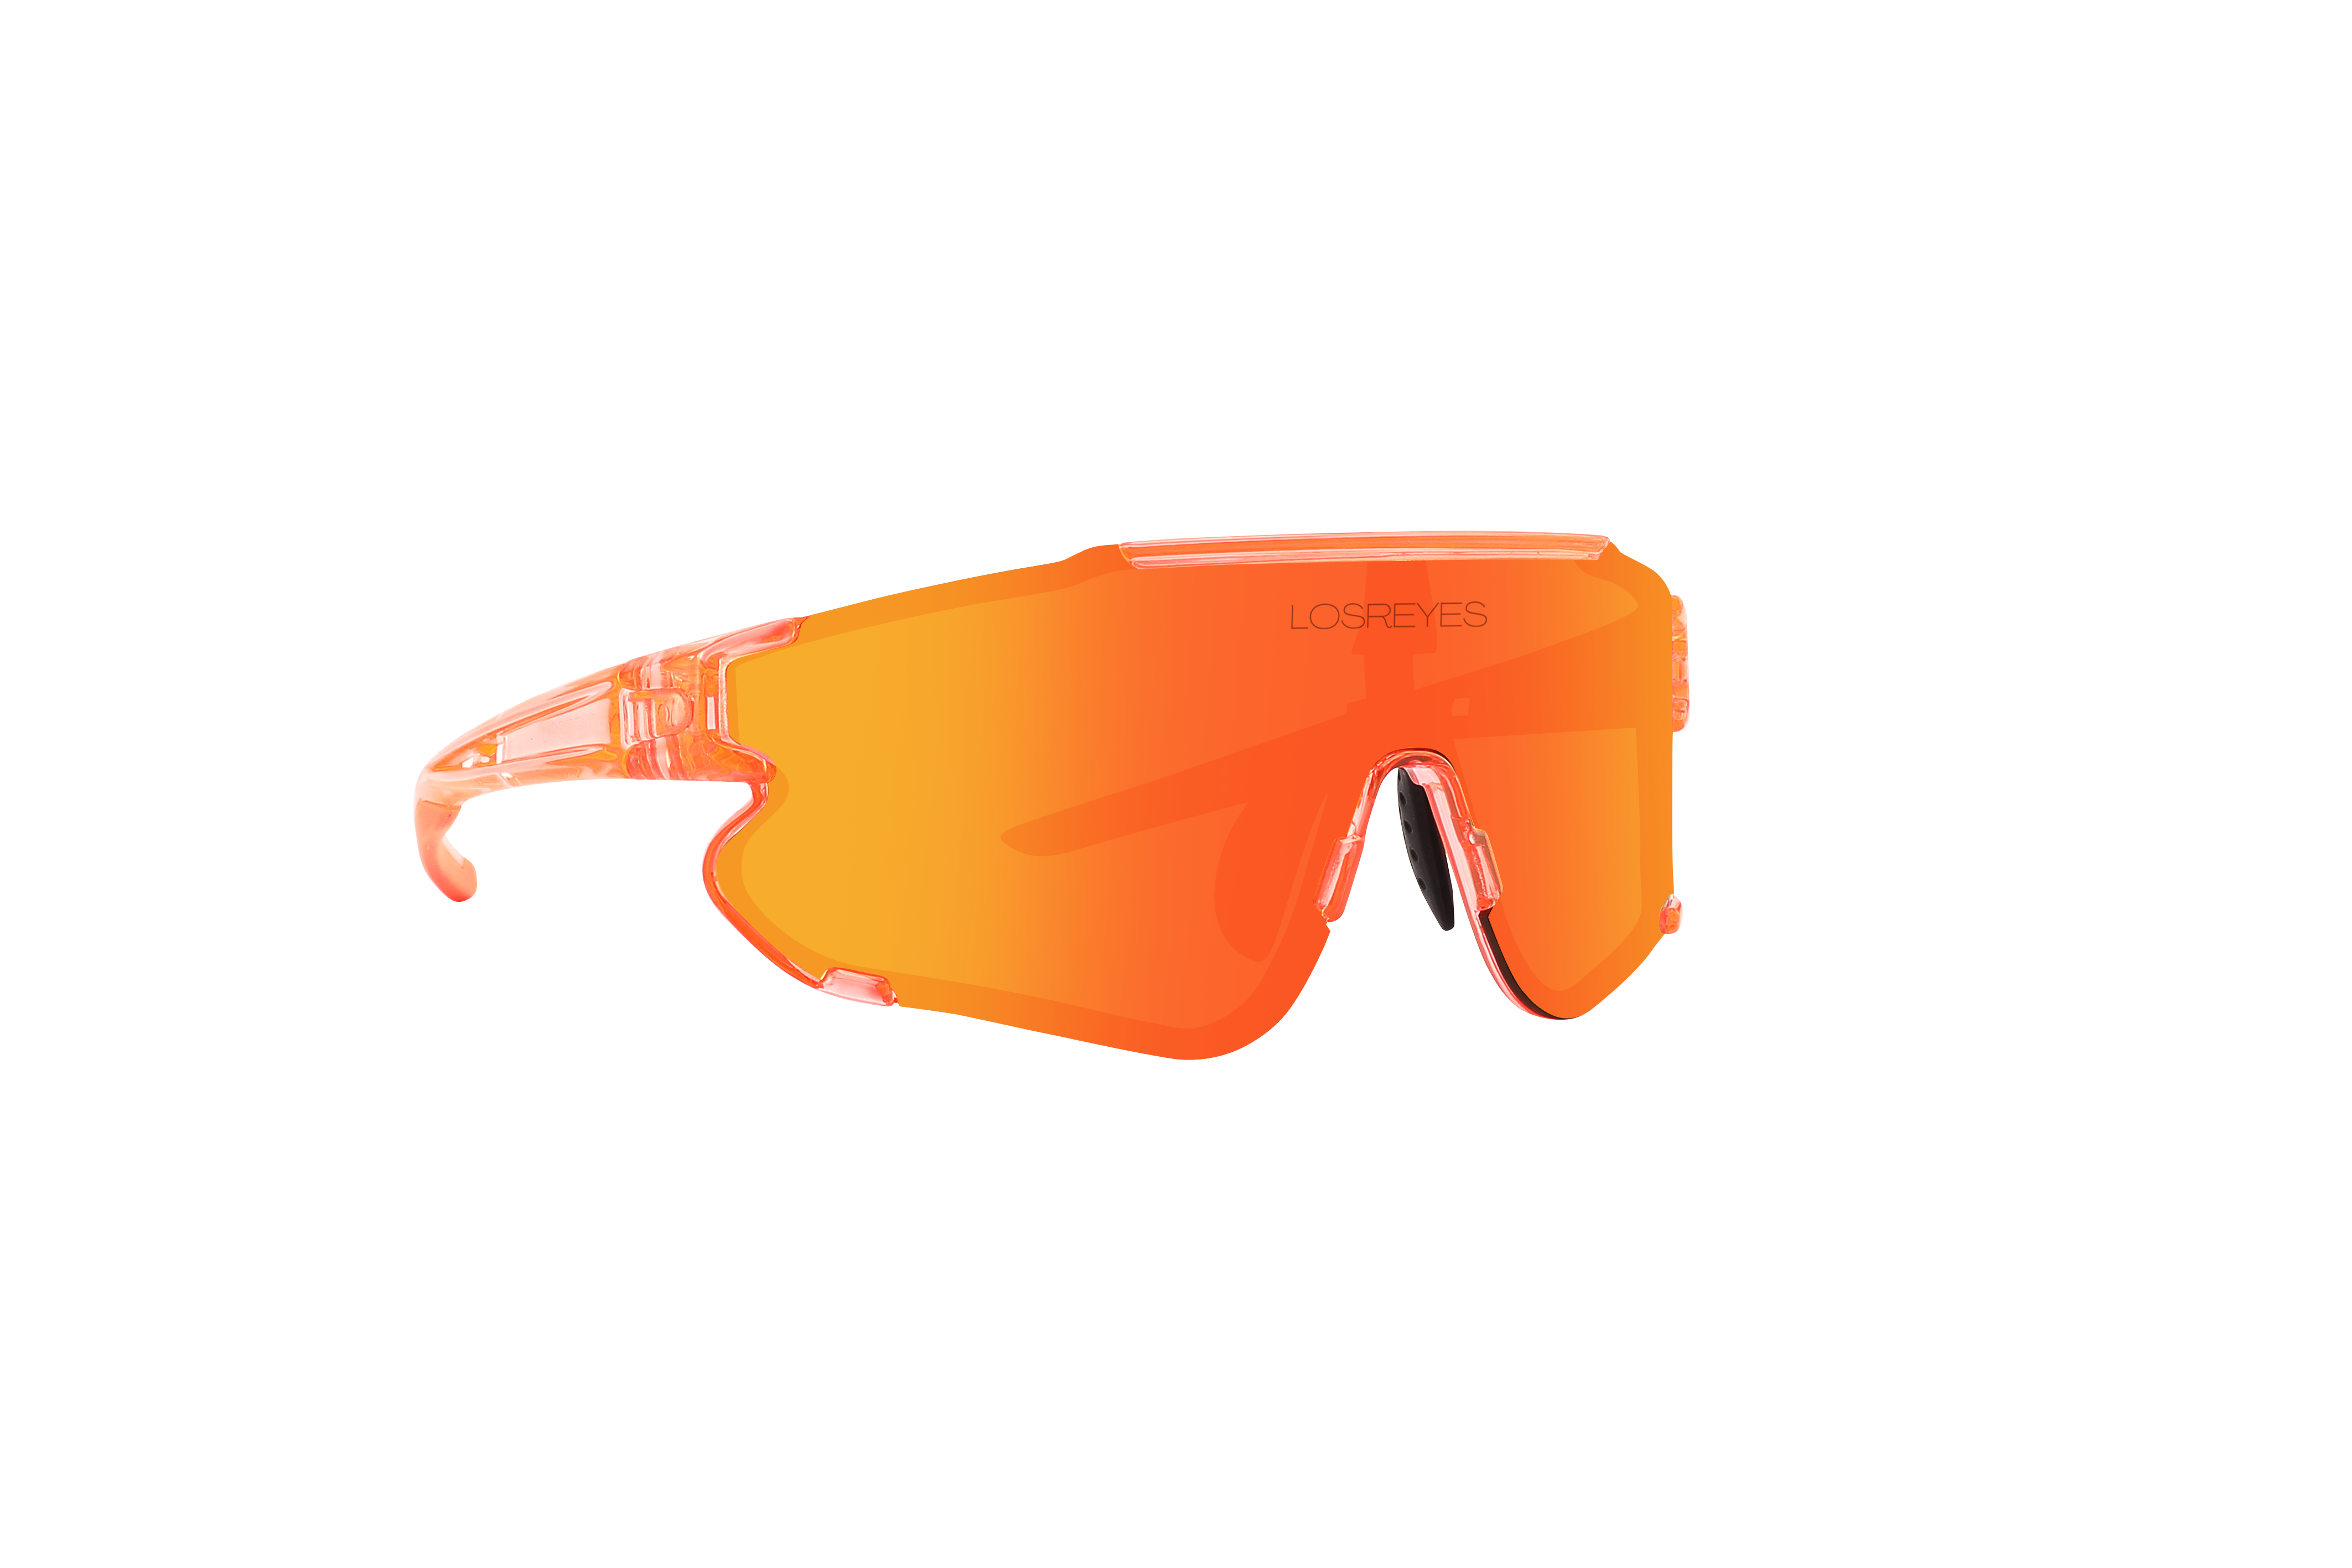 Los Reyes Miami Prime "Transparent Orange" Sunglasses